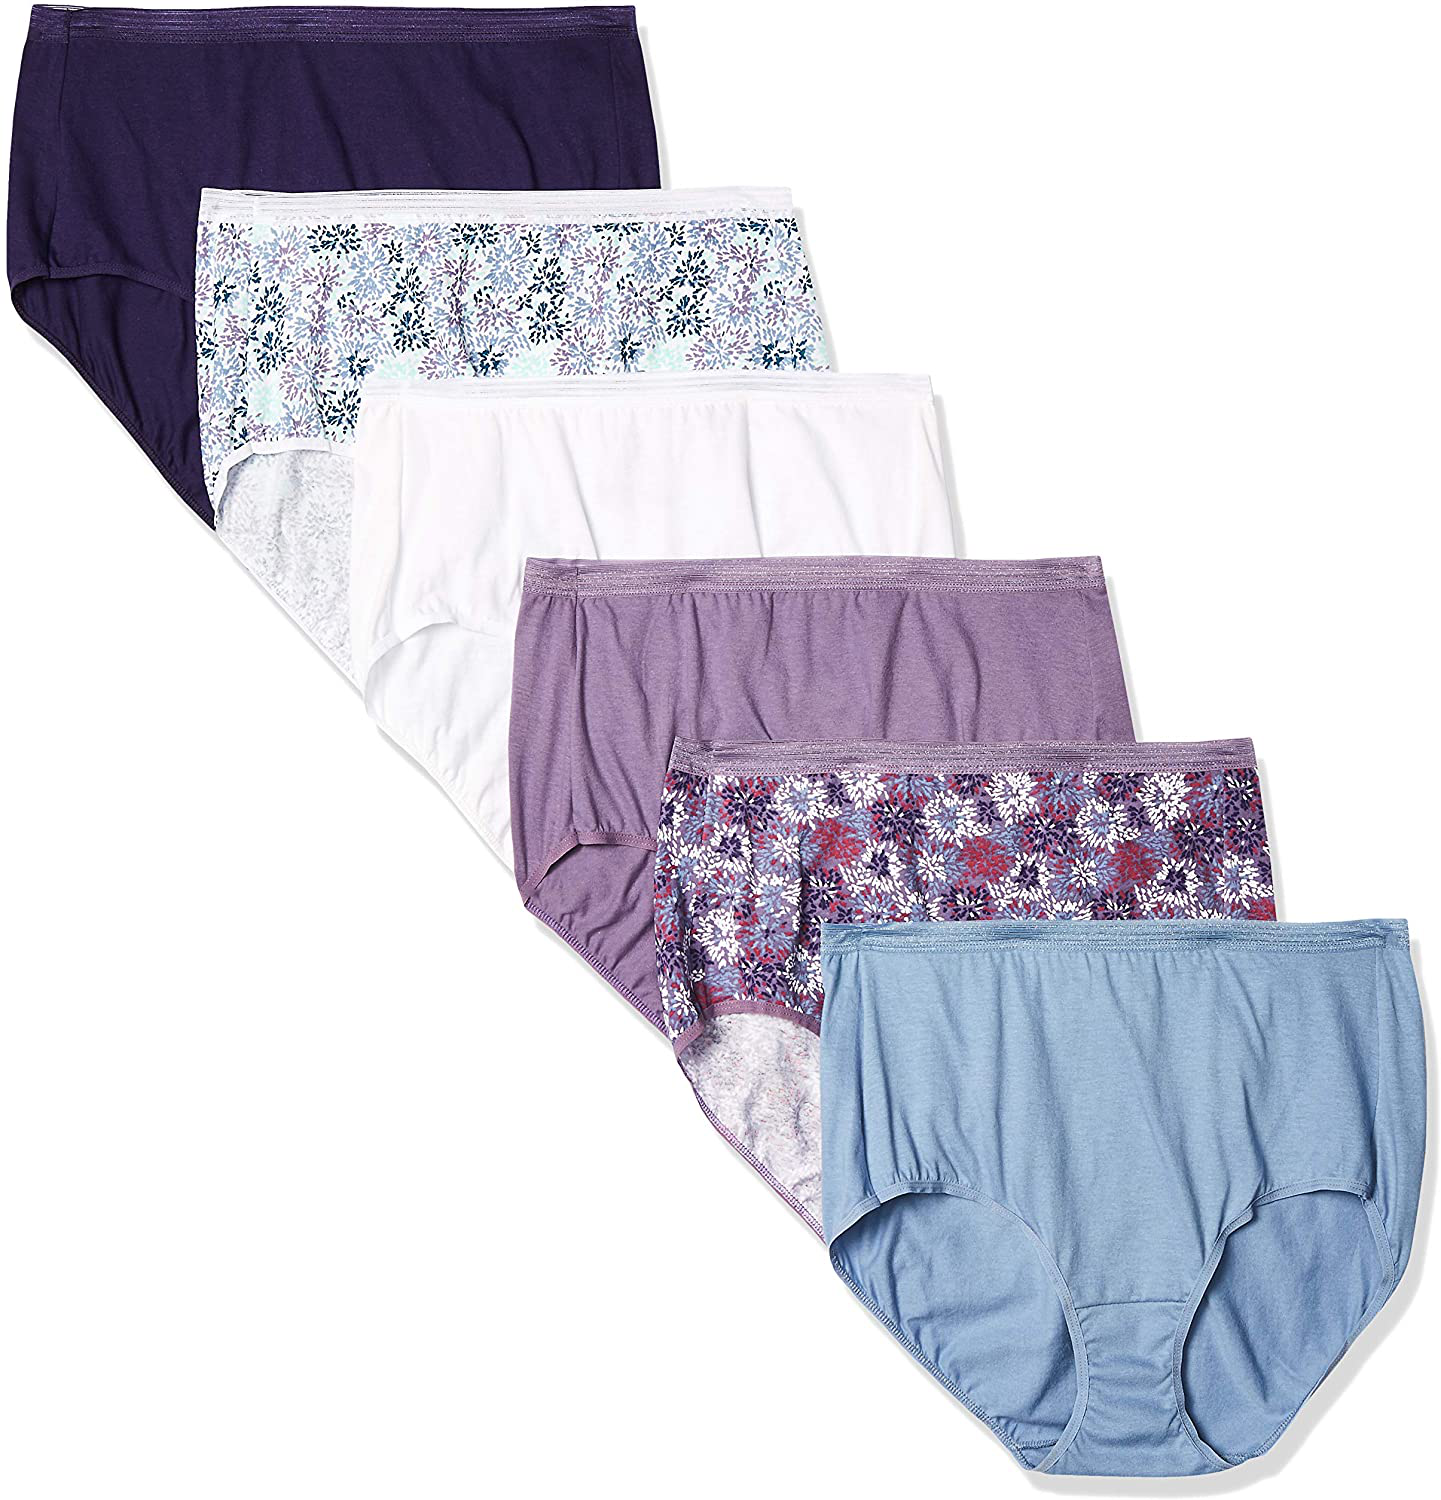 Hanes Women's Cool Comfort Sporty Microfiber Boyshort Underwear, Pack of 6,  Assorted